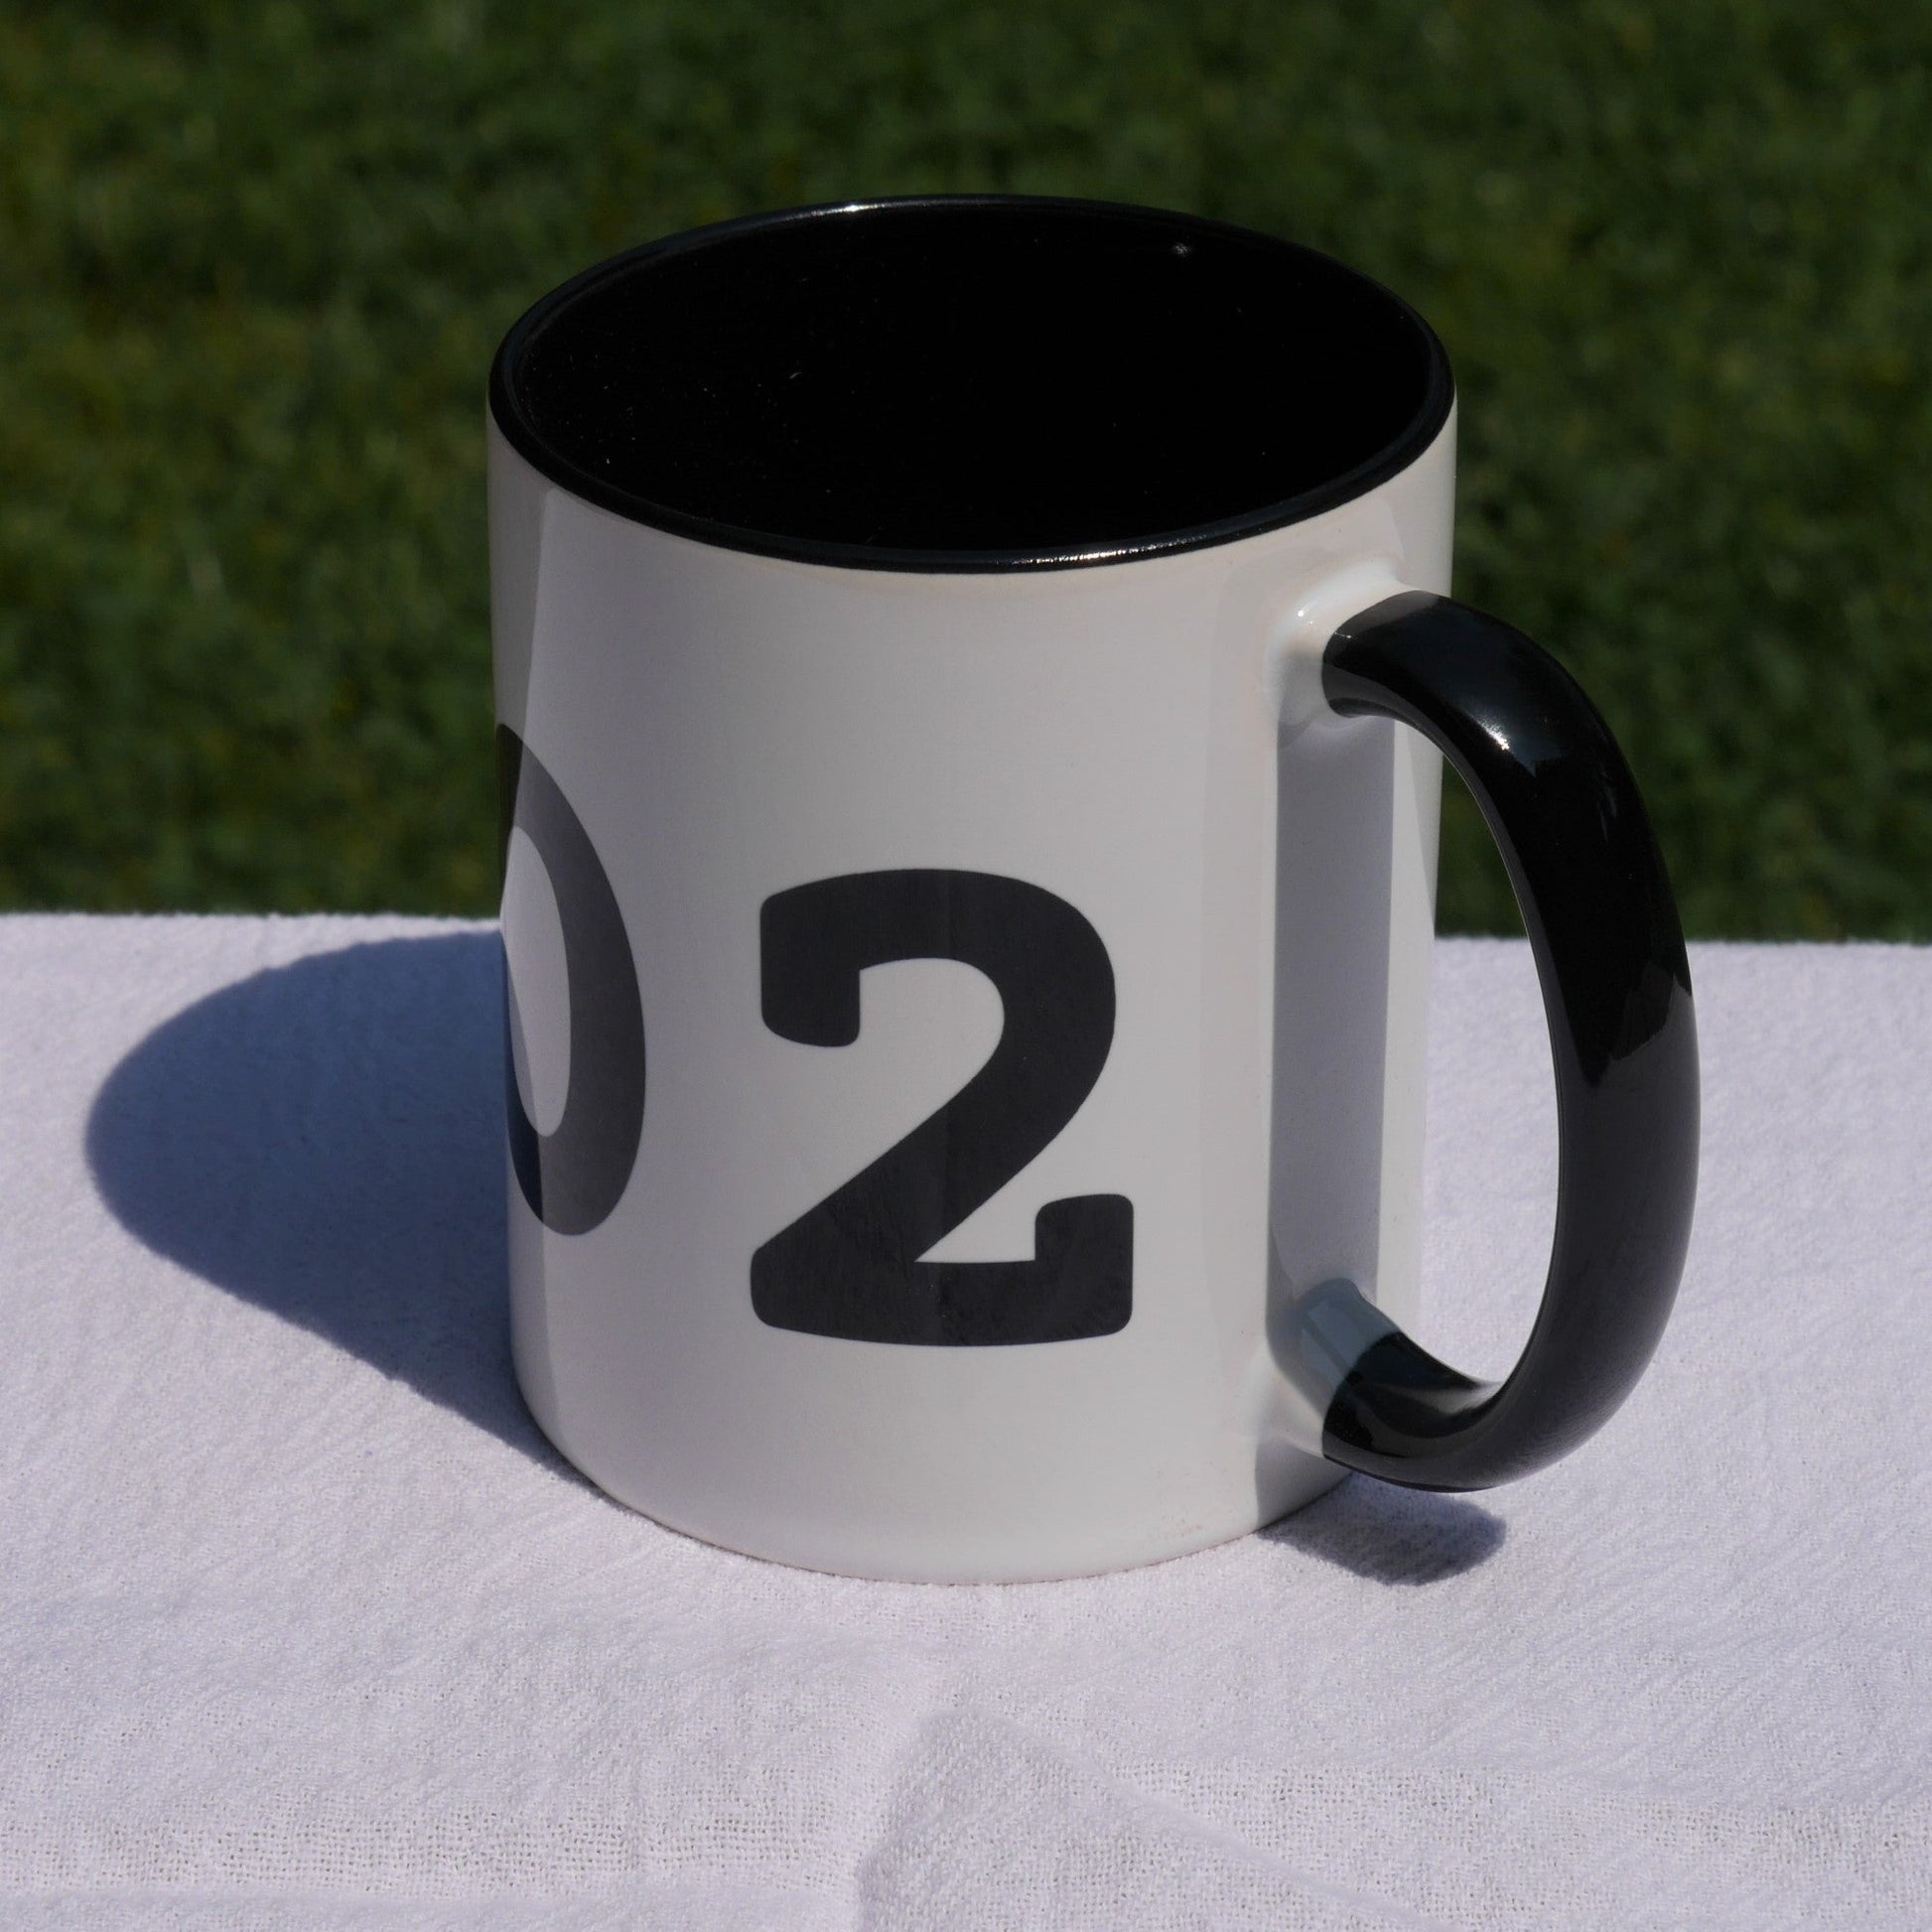 Aviation-Theme Coffee Mug - Black • YTH Thompson • YHM Designs - Image 06